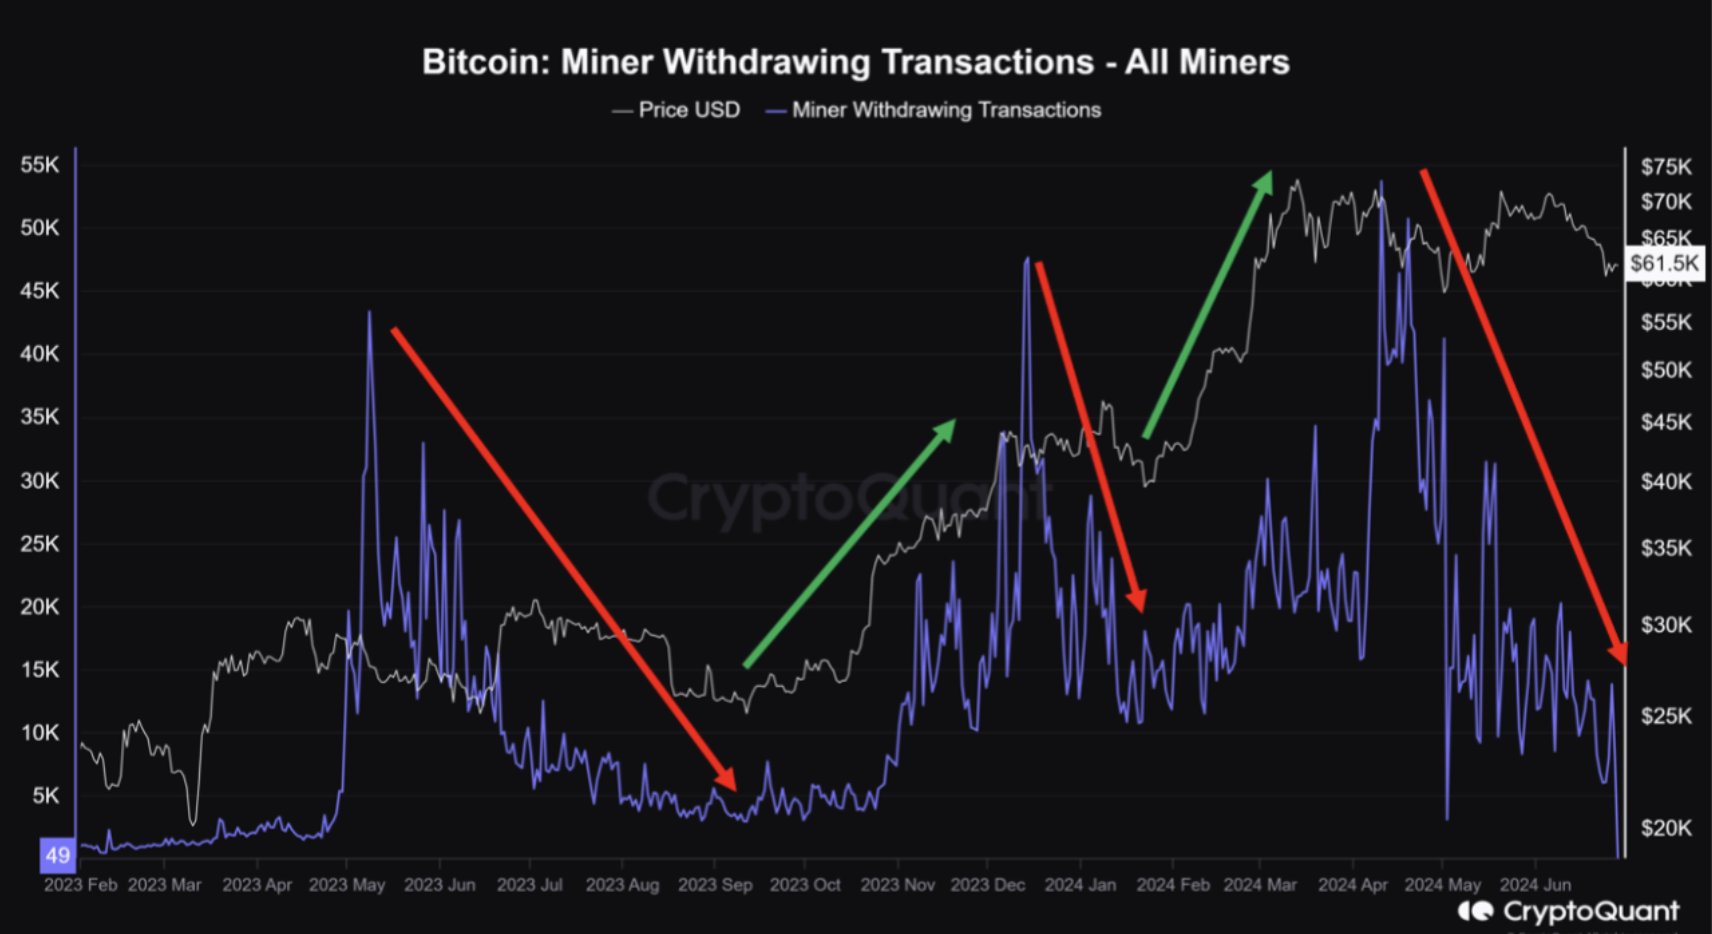 Minero de Bitcoin retirando transacciones